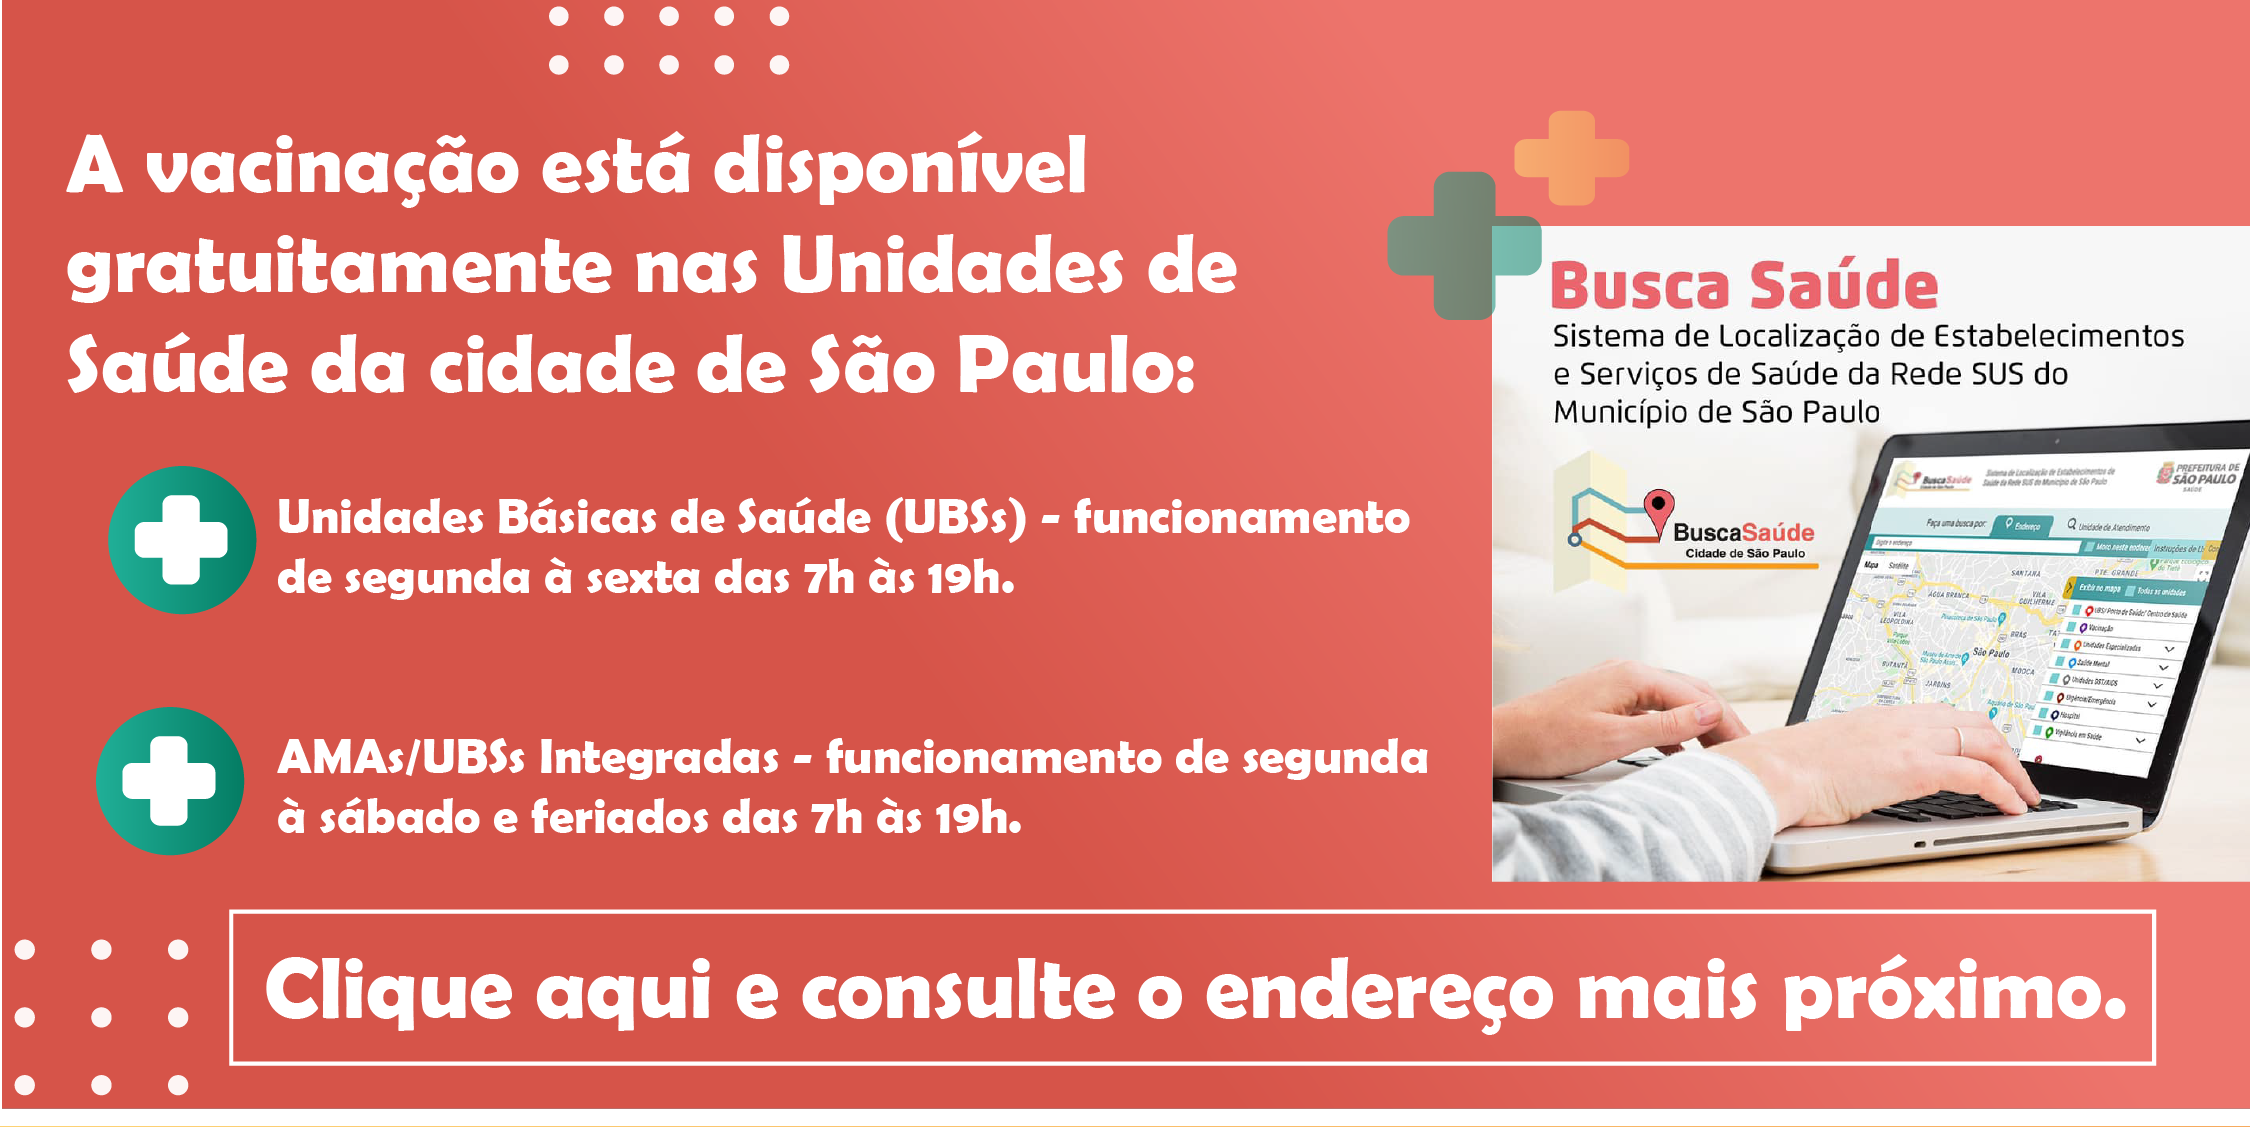 A vacinação está disponível gratuitamente nas Unidades de Saúde da cidade de São Paulo:Unidades Básicas de Saúde (UBSs) - funcionamento de segunda à sexta das 7h às 19h.   AMAs/UBSs Integradas - funcionamento de segunda à sábado das 7h às 19h.Clique aqui e consulte o endereço mais próximo.